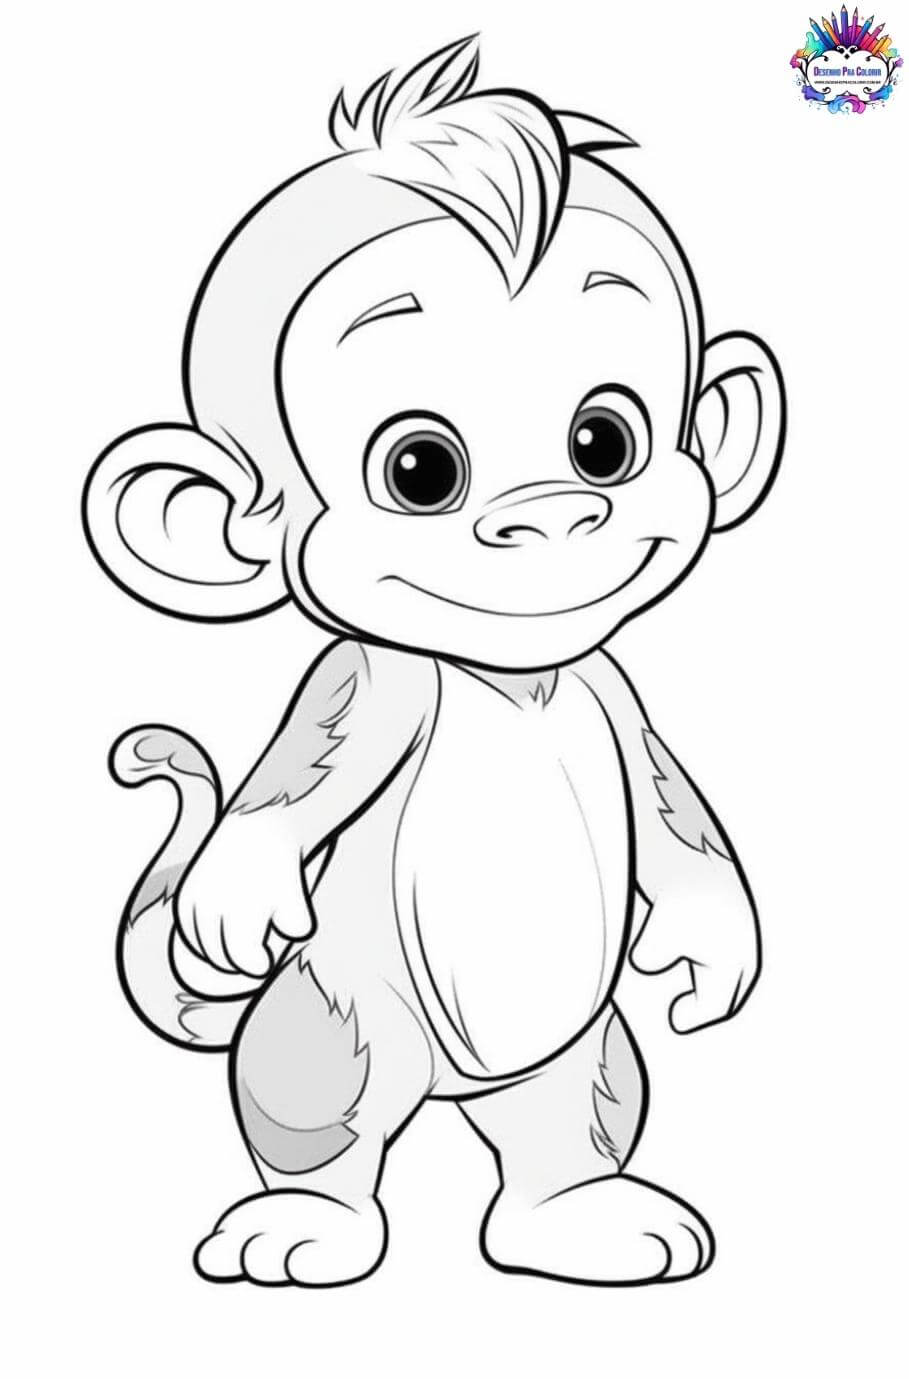 Desenho de Macaco de desenho animado para colorir